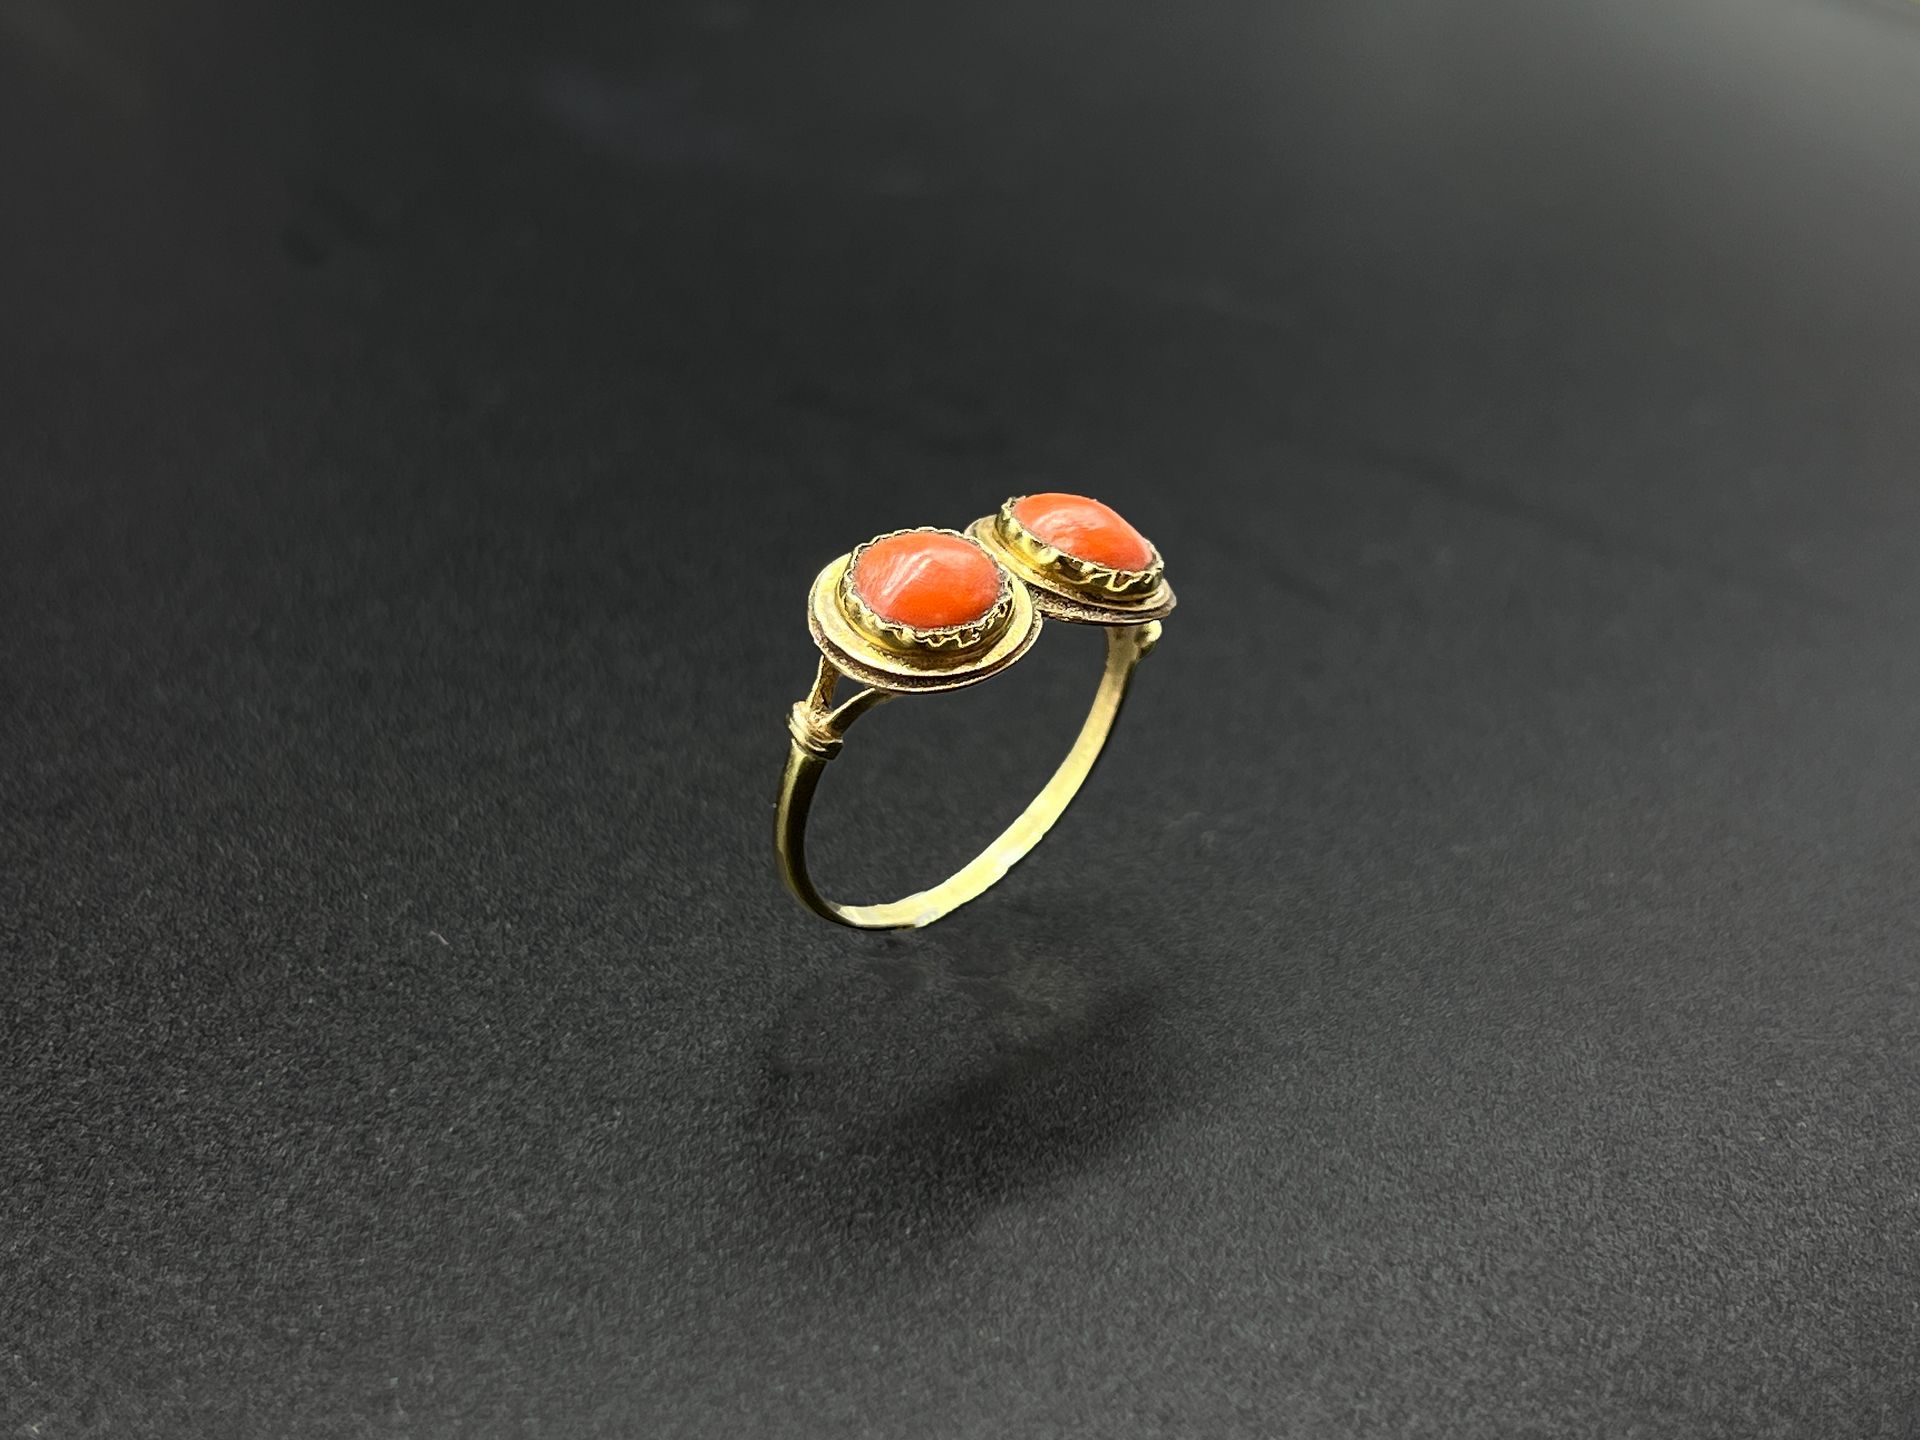 Null 黄金（750）戒指，镶嵌有两个小的圆形珊瑚凸面体。

19世纪的作品。

毛重：2.3克。